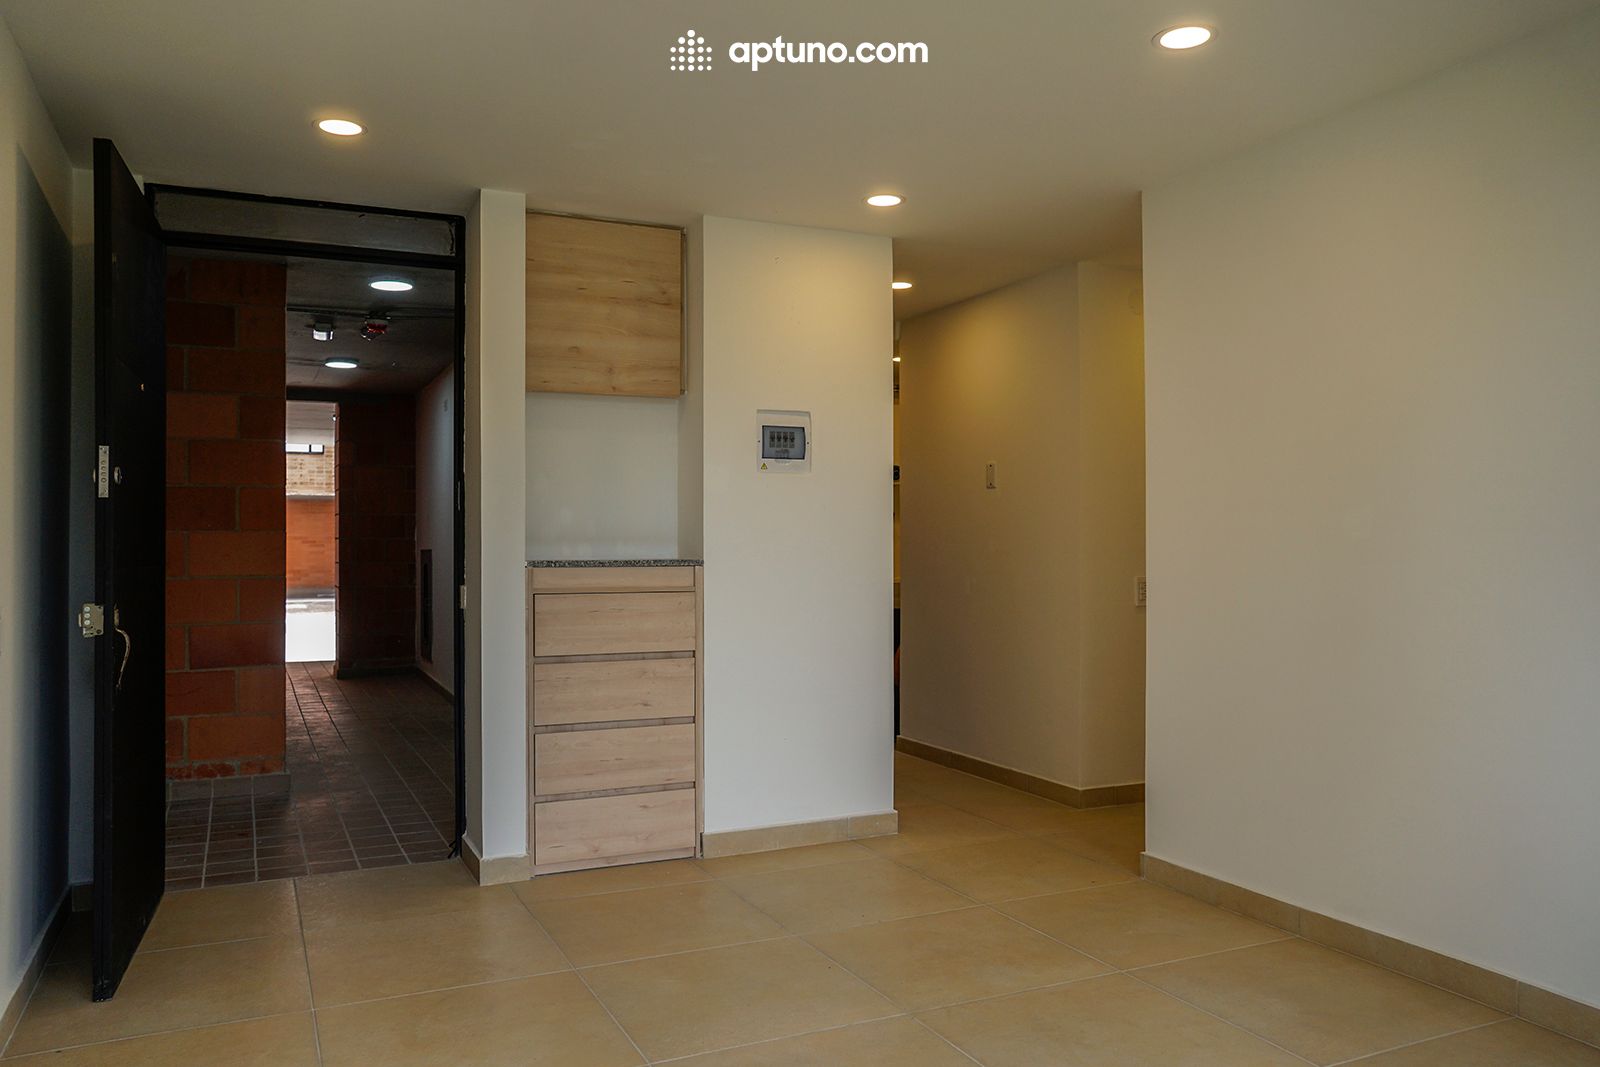 Apartamento en arriendo Cajicá 54 m² - $ 1.200.000,00